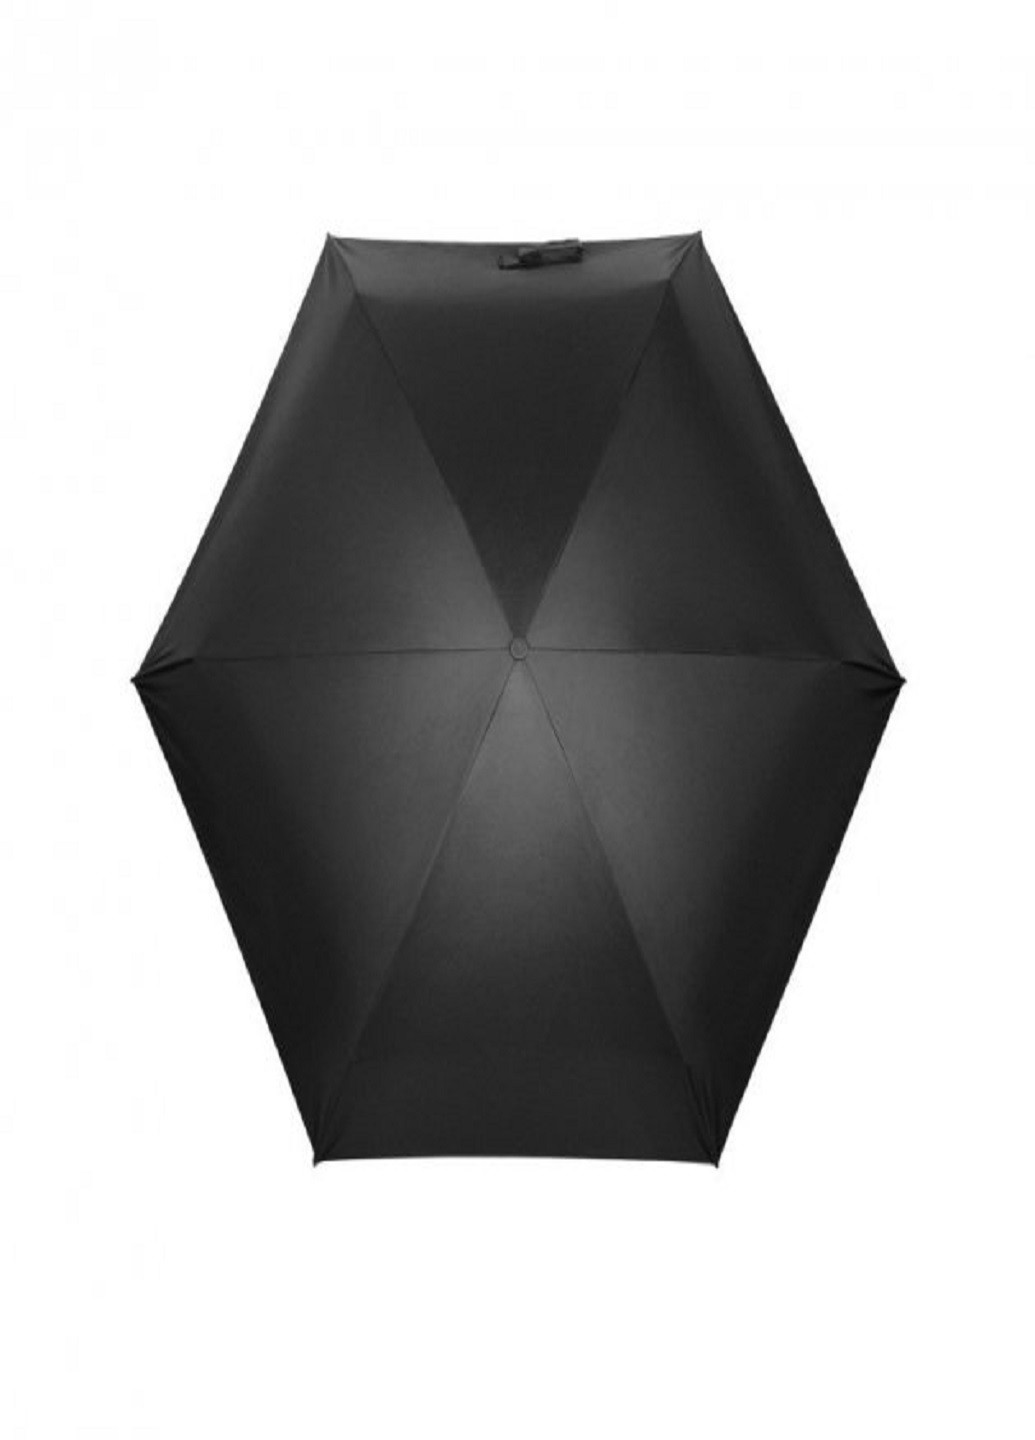 Универсальный мини зонт в капсуле Black карманный зонт в футляре VTech (253499267)